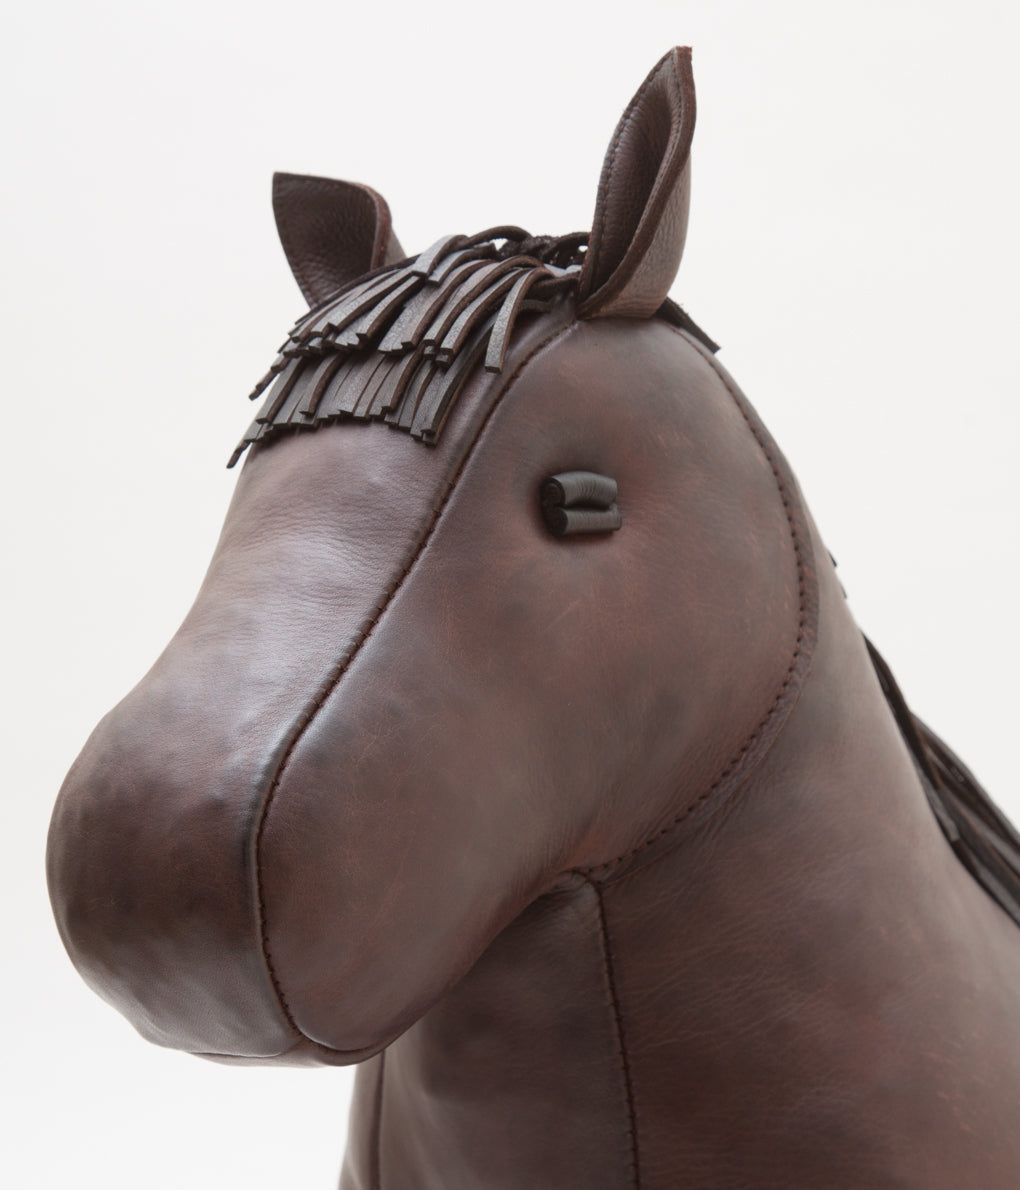 OMERSA "HORSE - STANDARD"(BROWN)